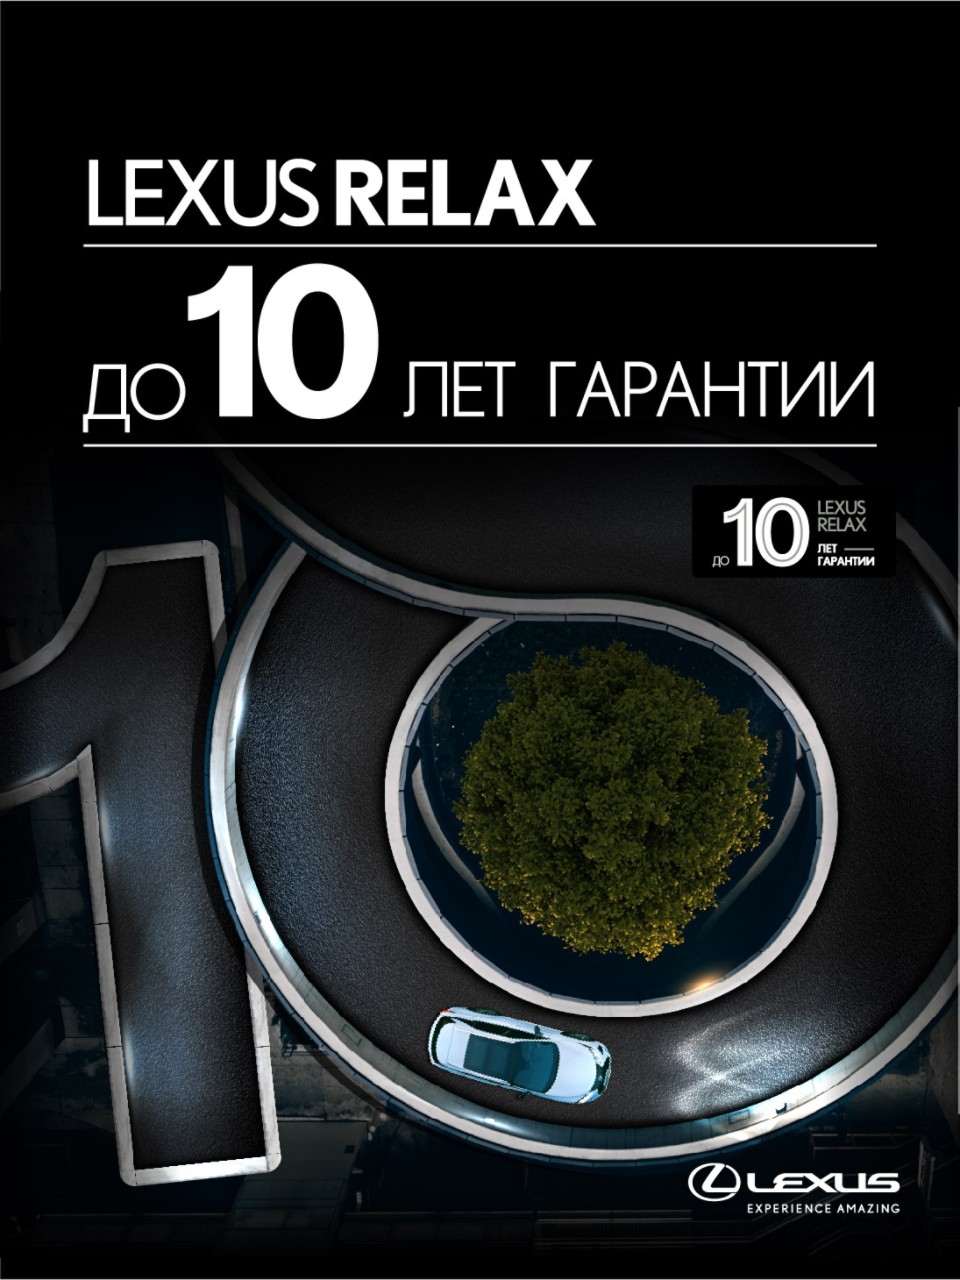 lexus-relax-525x700px_рус